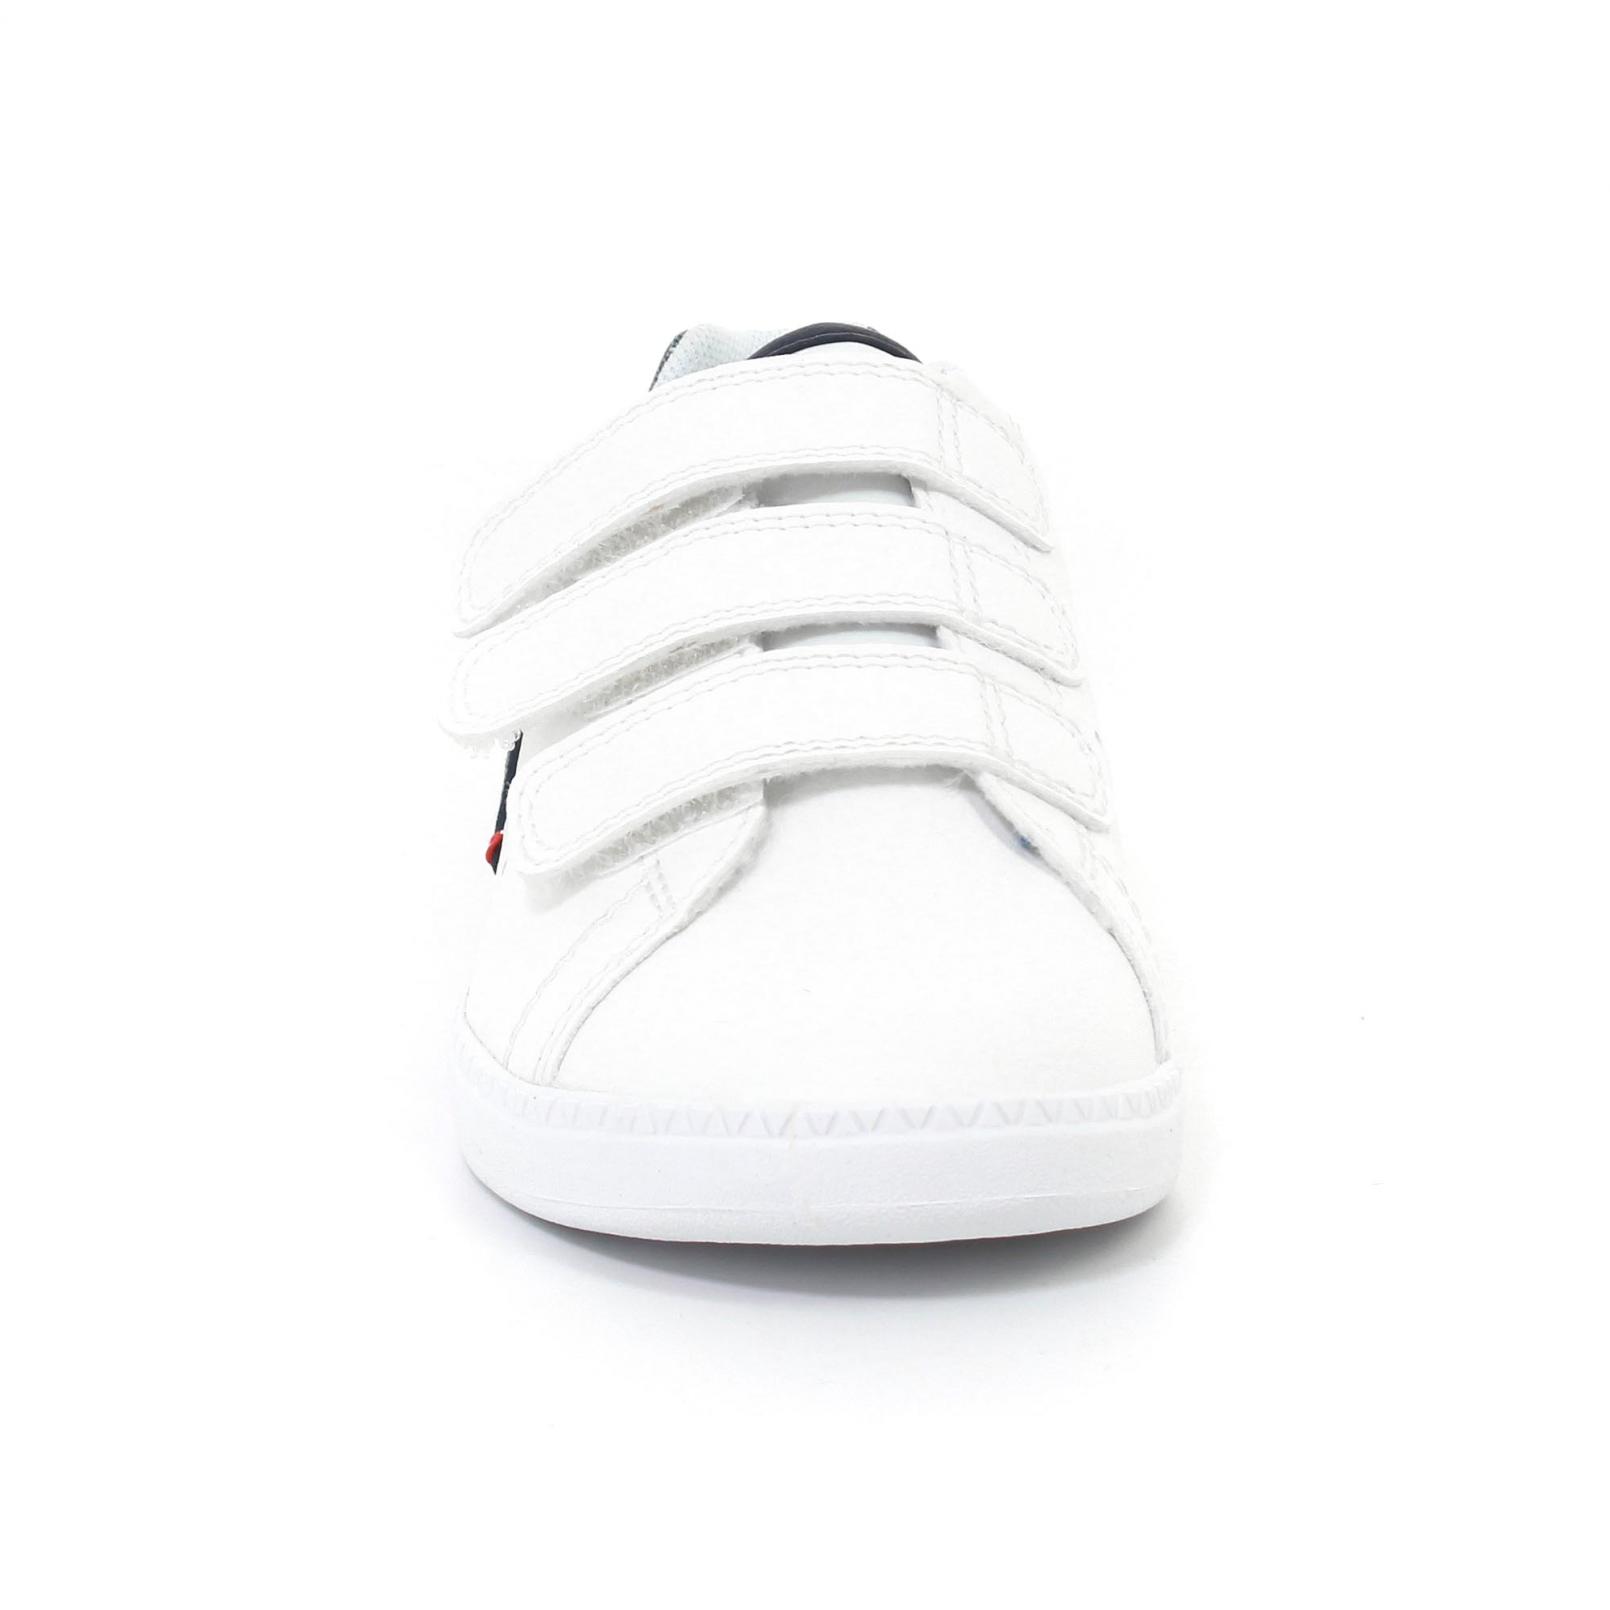 Shoes – Le Coq Sportif Courtone Ps S Lea/2 Tones White/Blue